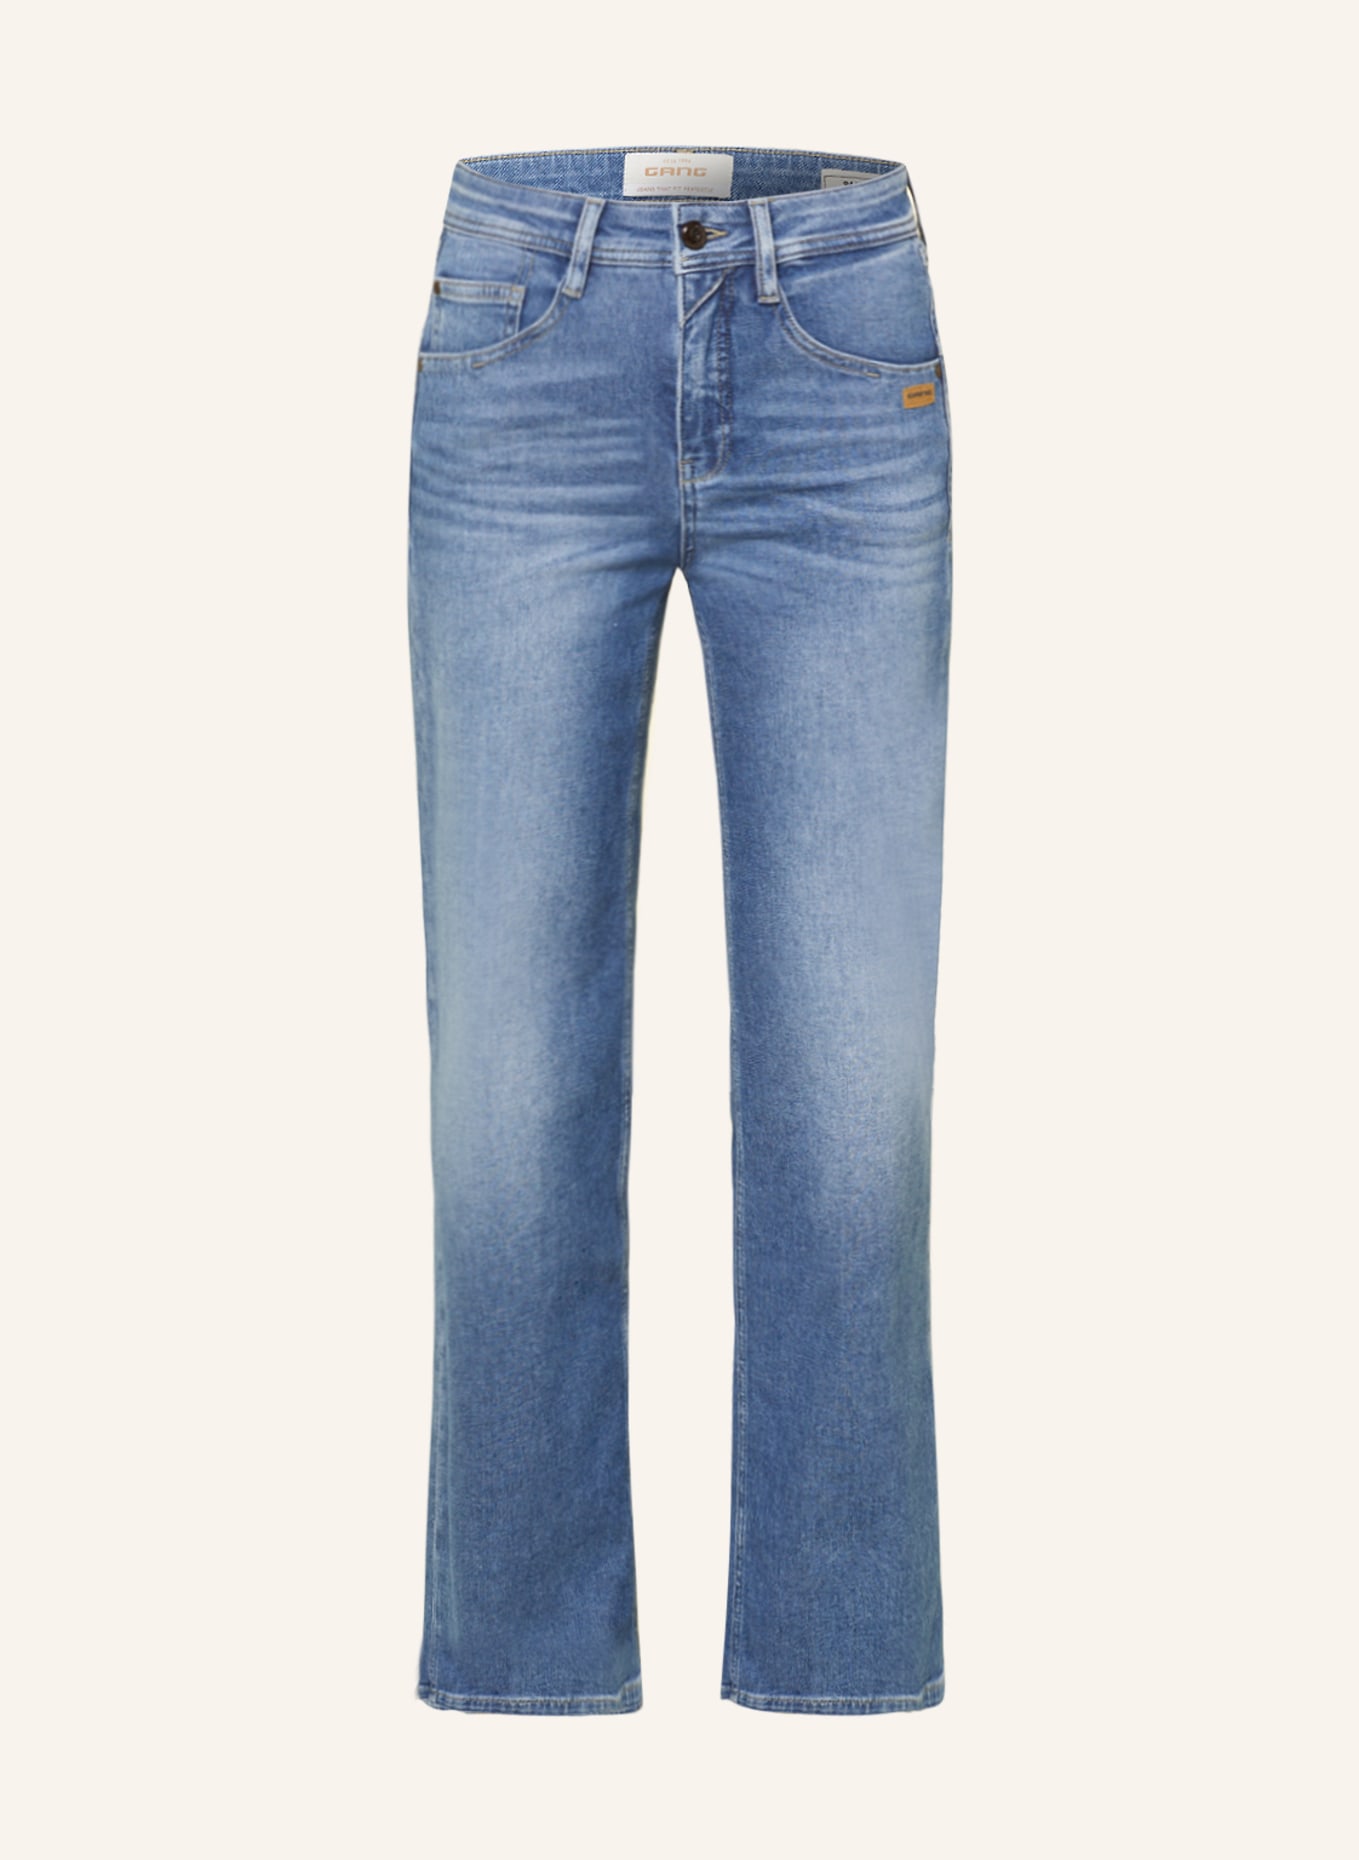 GANG Flared jeans AMELIE, Color: 7960  sharpe mid blue (Image 1)